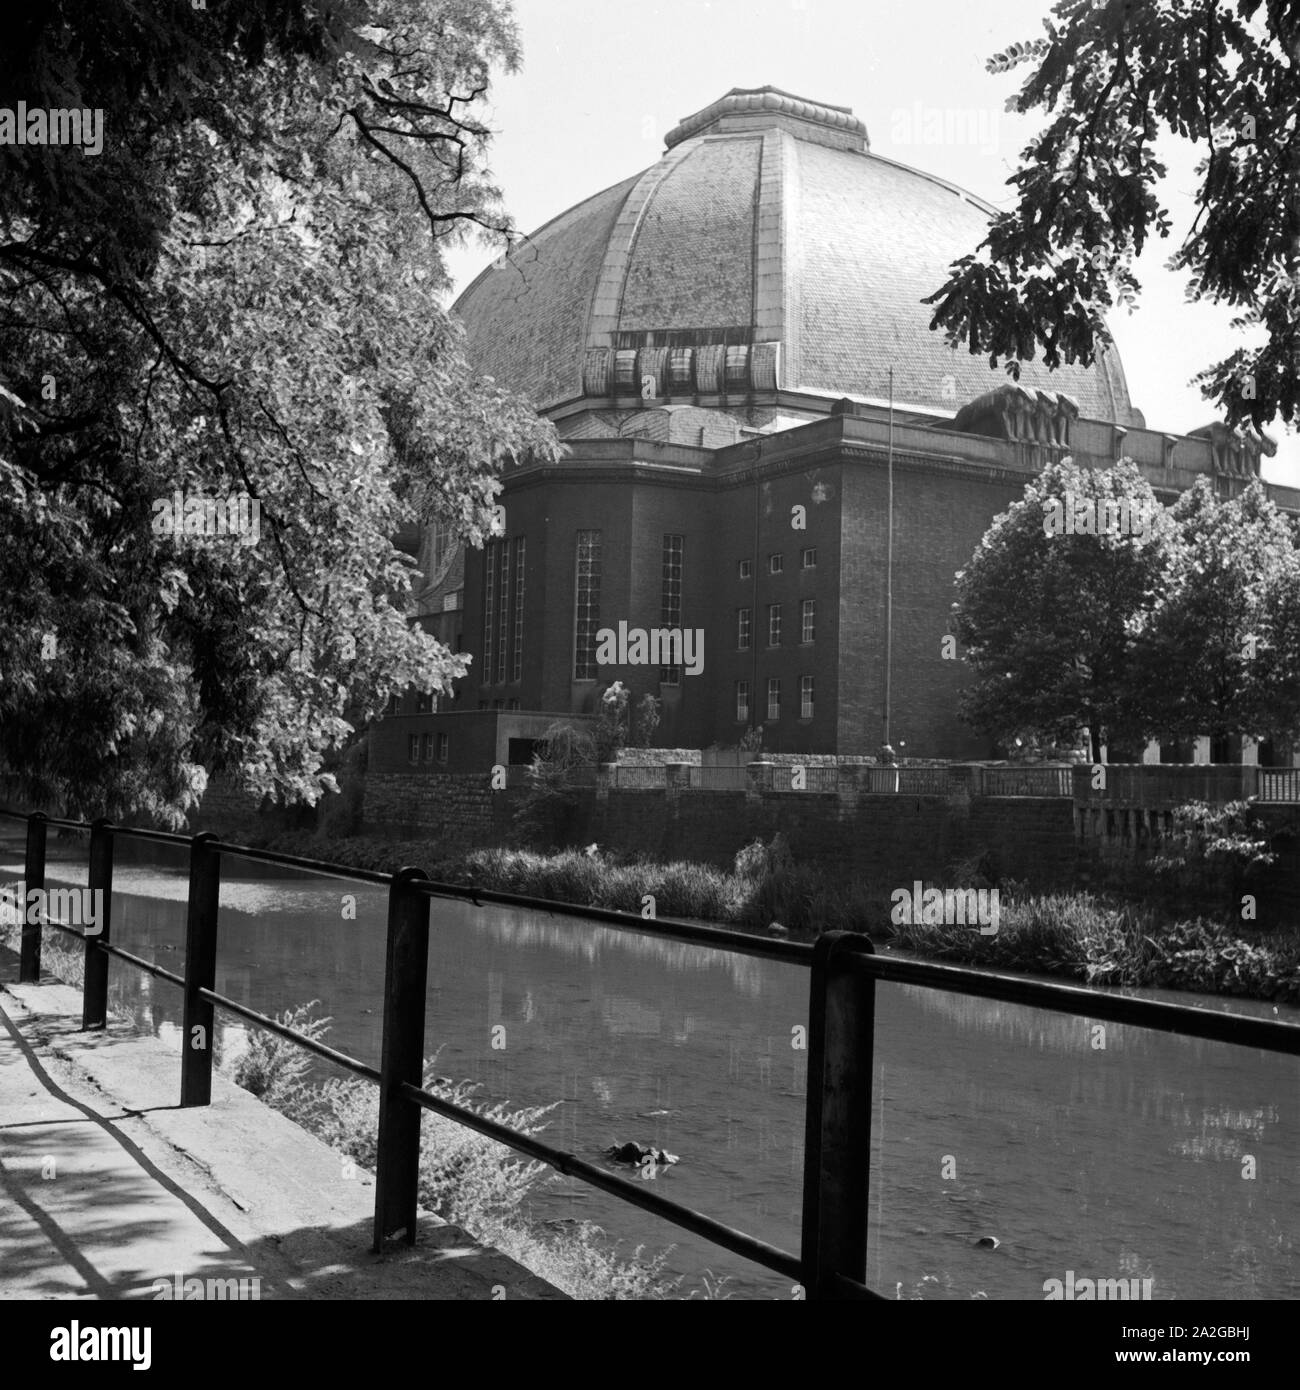 Die Stadthalle in Hagen, Deutschland 1930er Jahre. Hagen town hall, Germany 1930s. Stock Photo